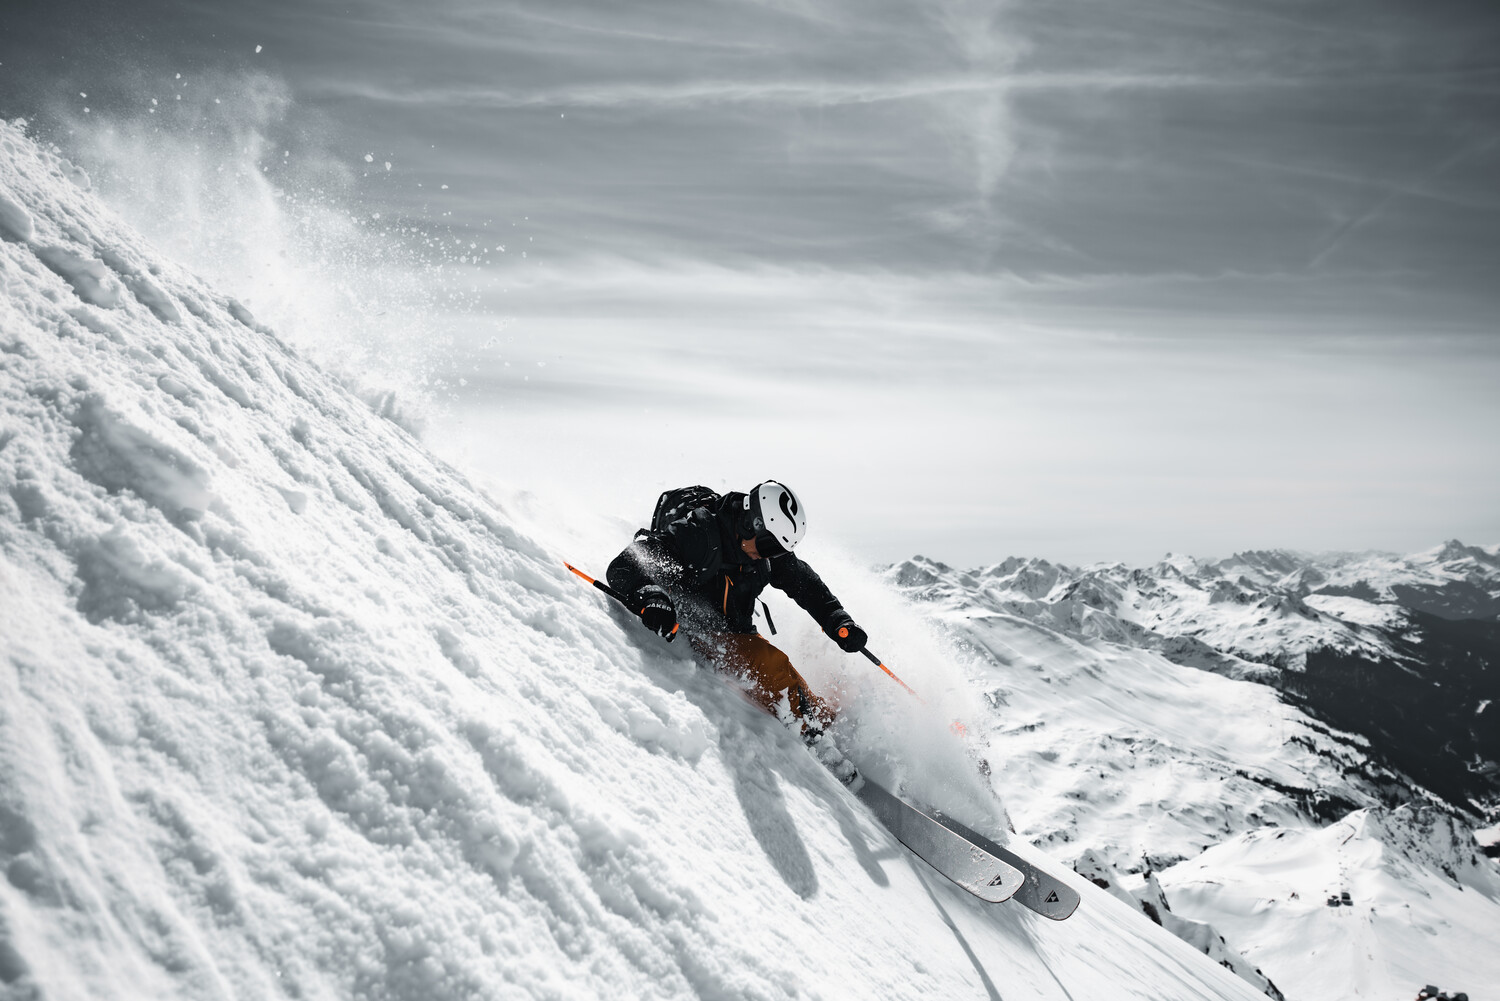  Freeride - skiing fun in the Arlberg ski area